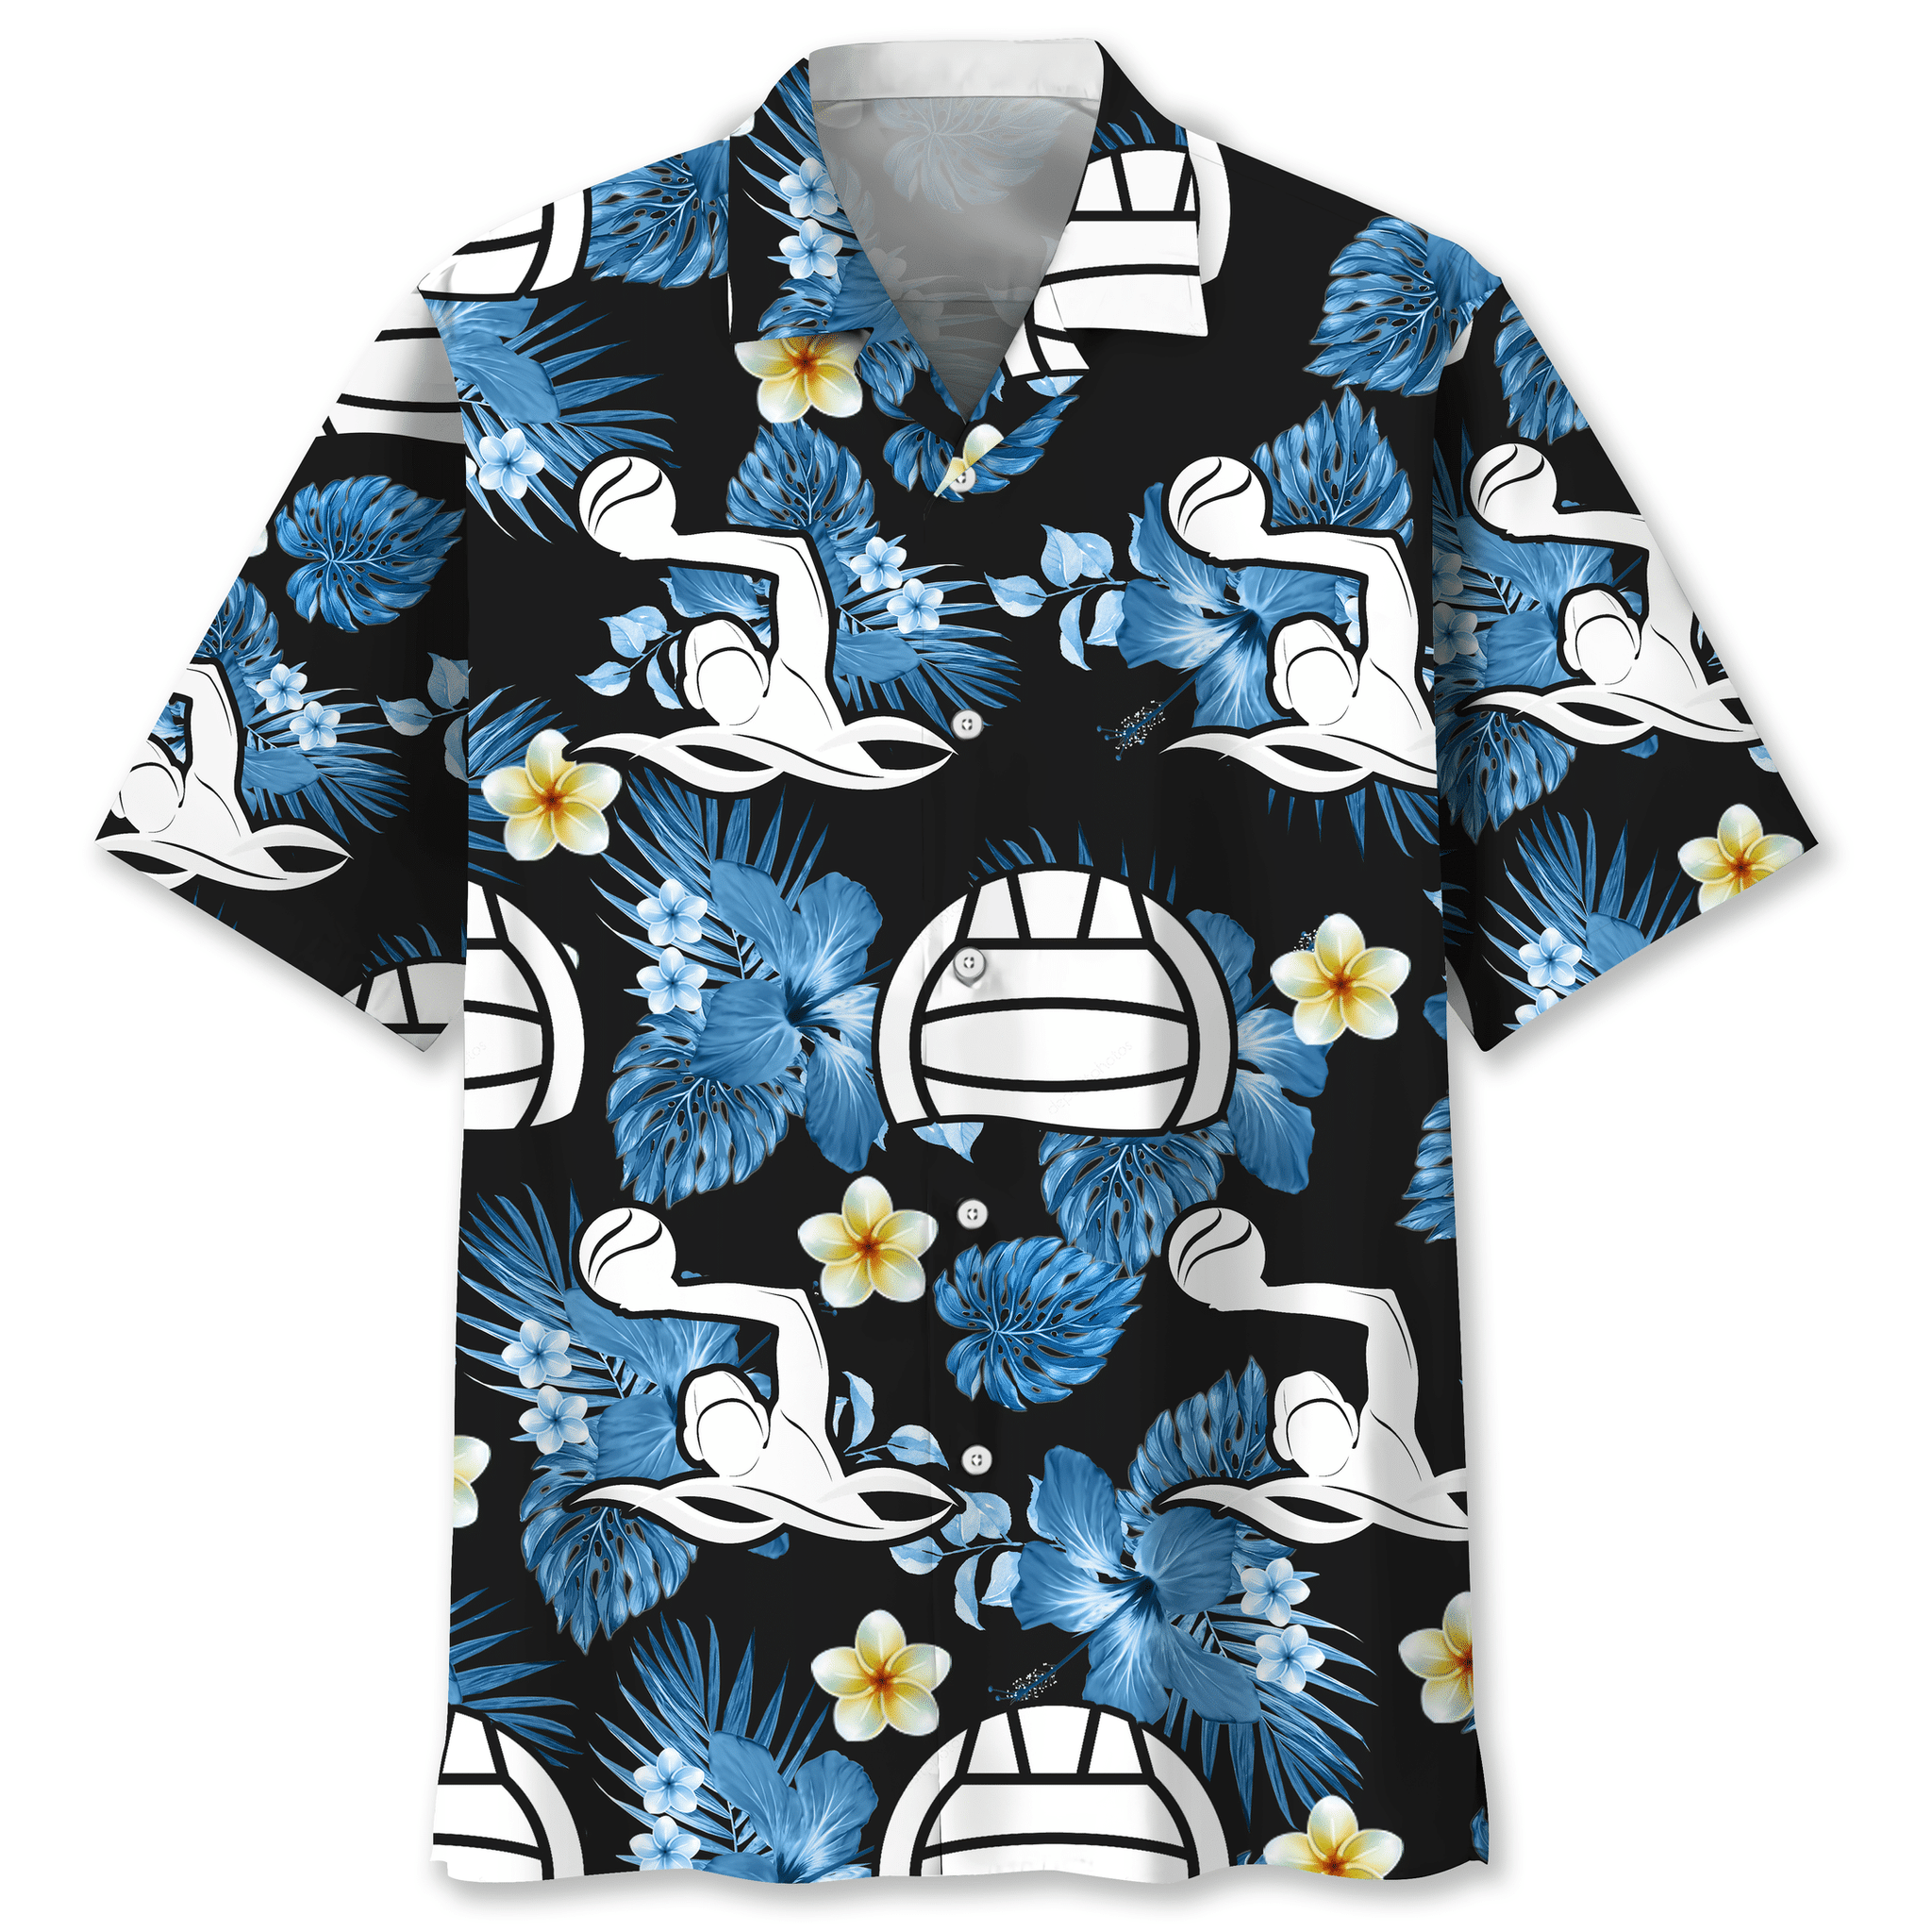 Water polo Hawaiian shirt and short